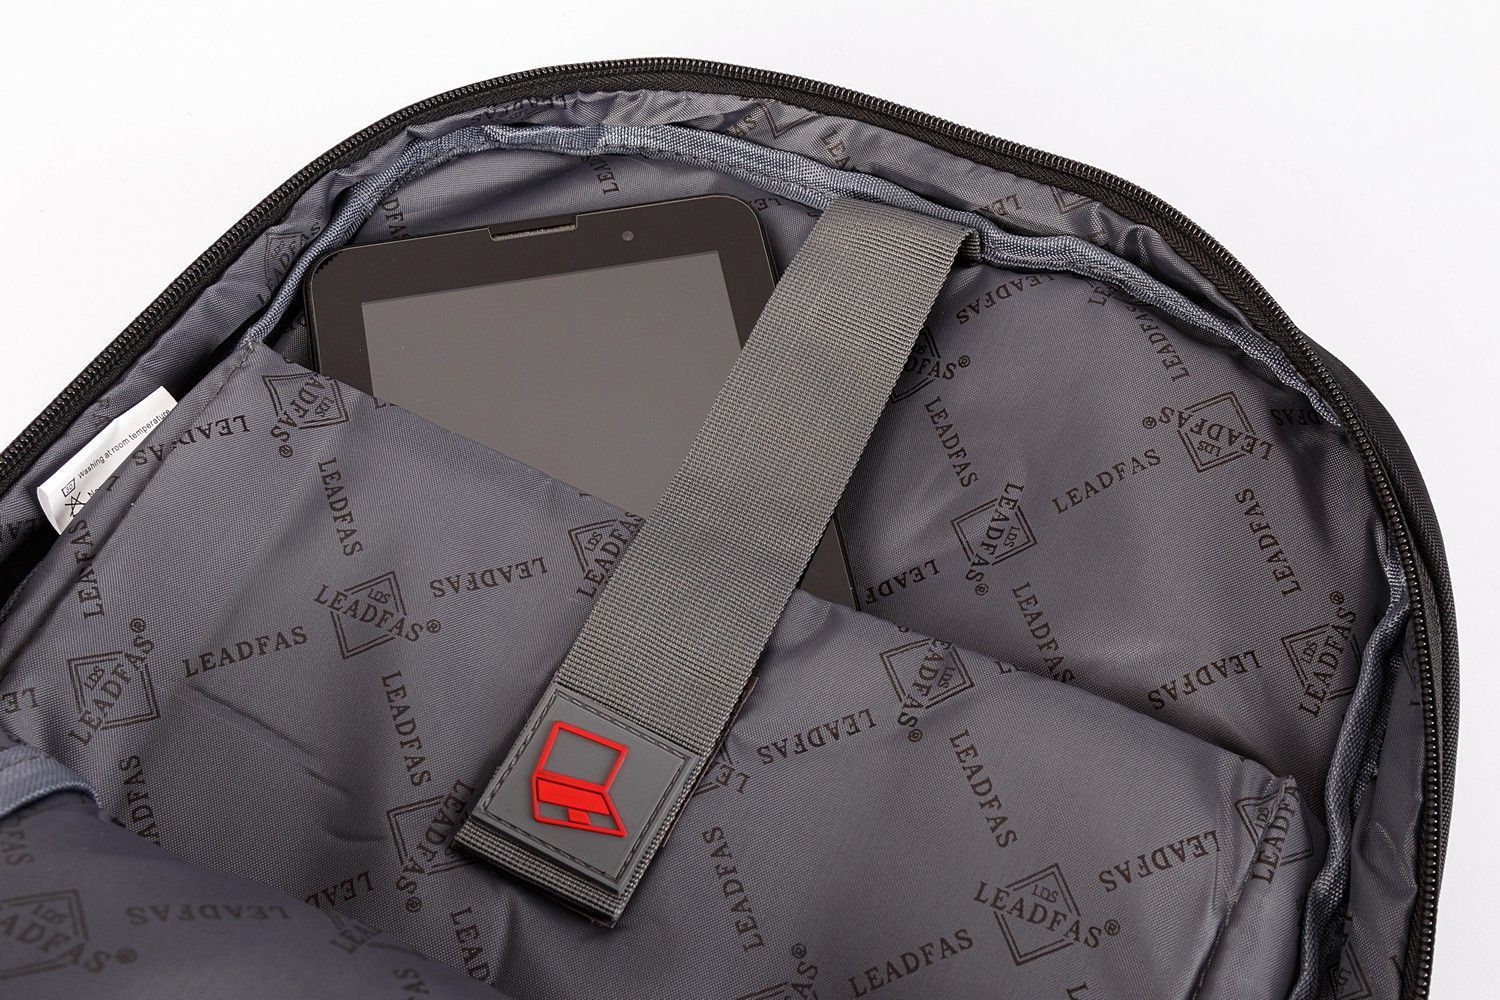 Рюкзак мужской городской, черный, для ноутбука, с USB портом, объем 17л